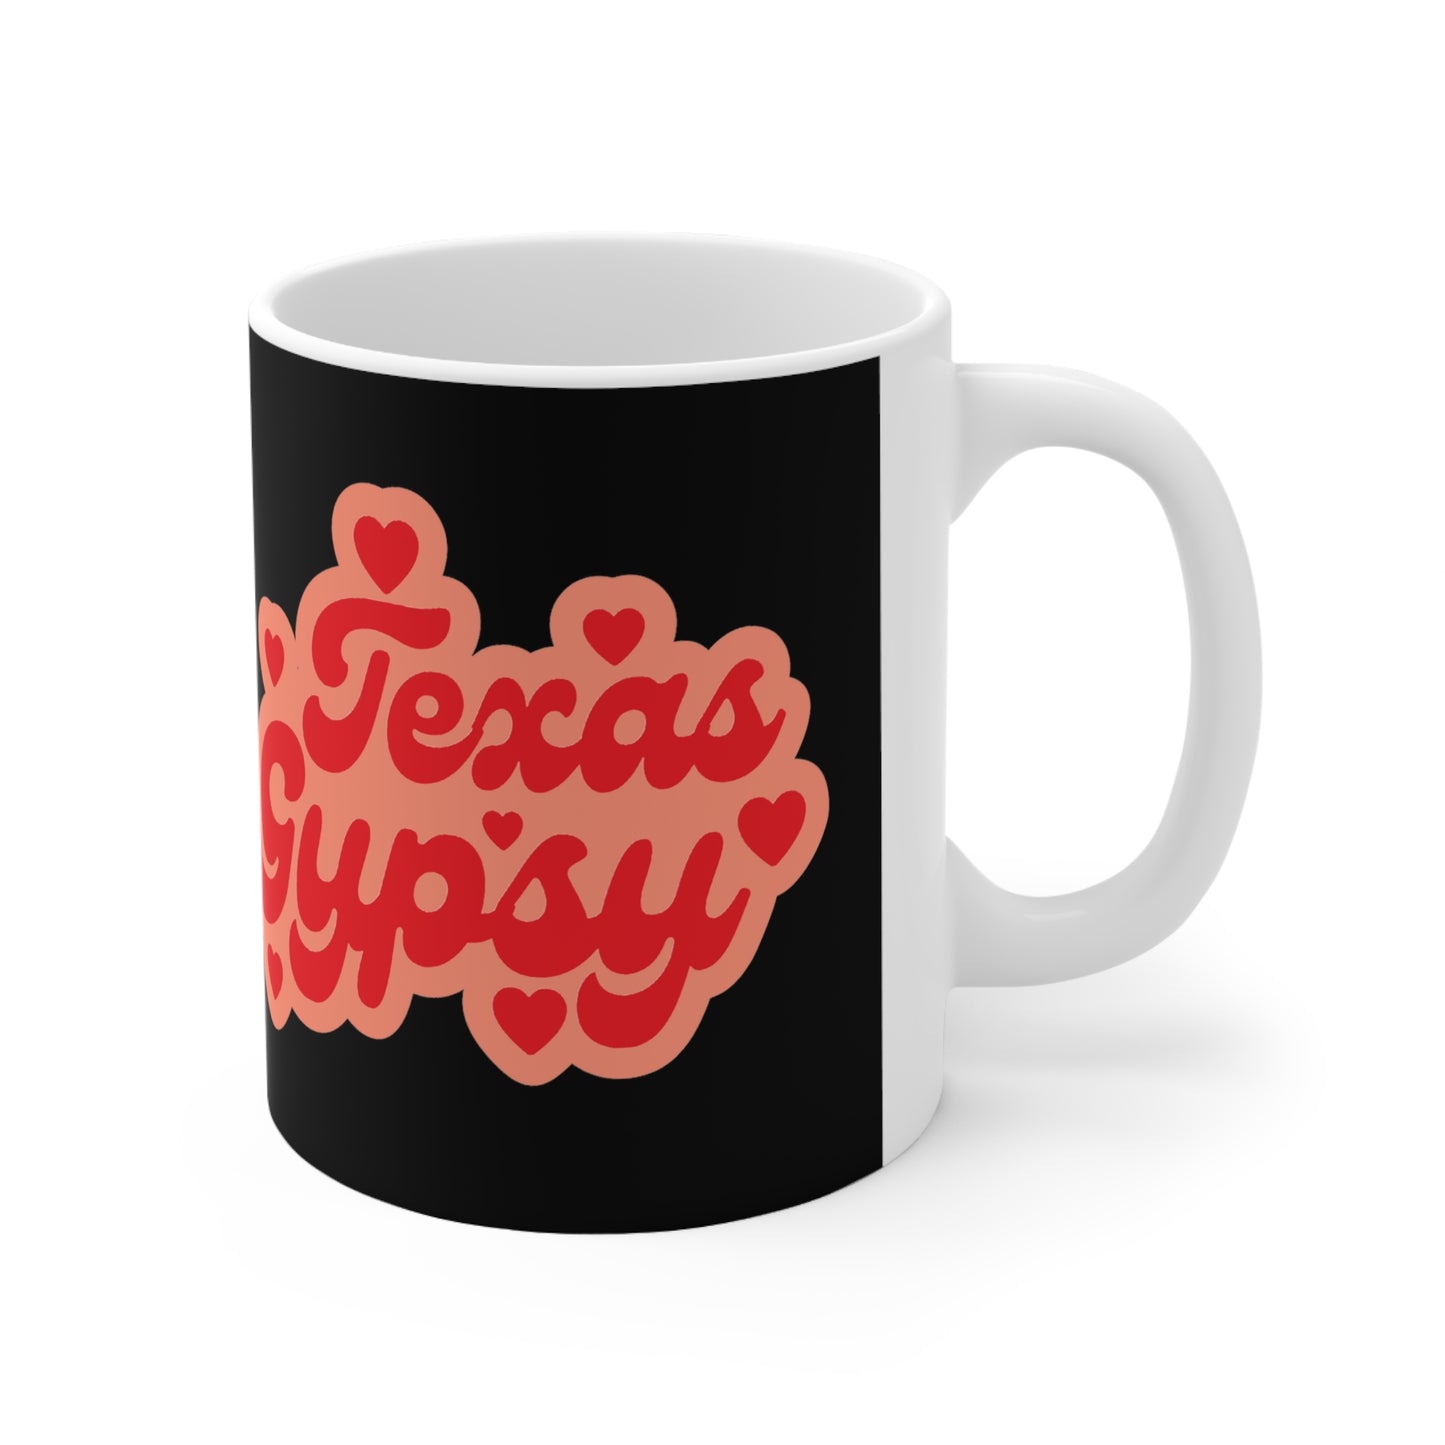 Texas Gypsy Love In Mug